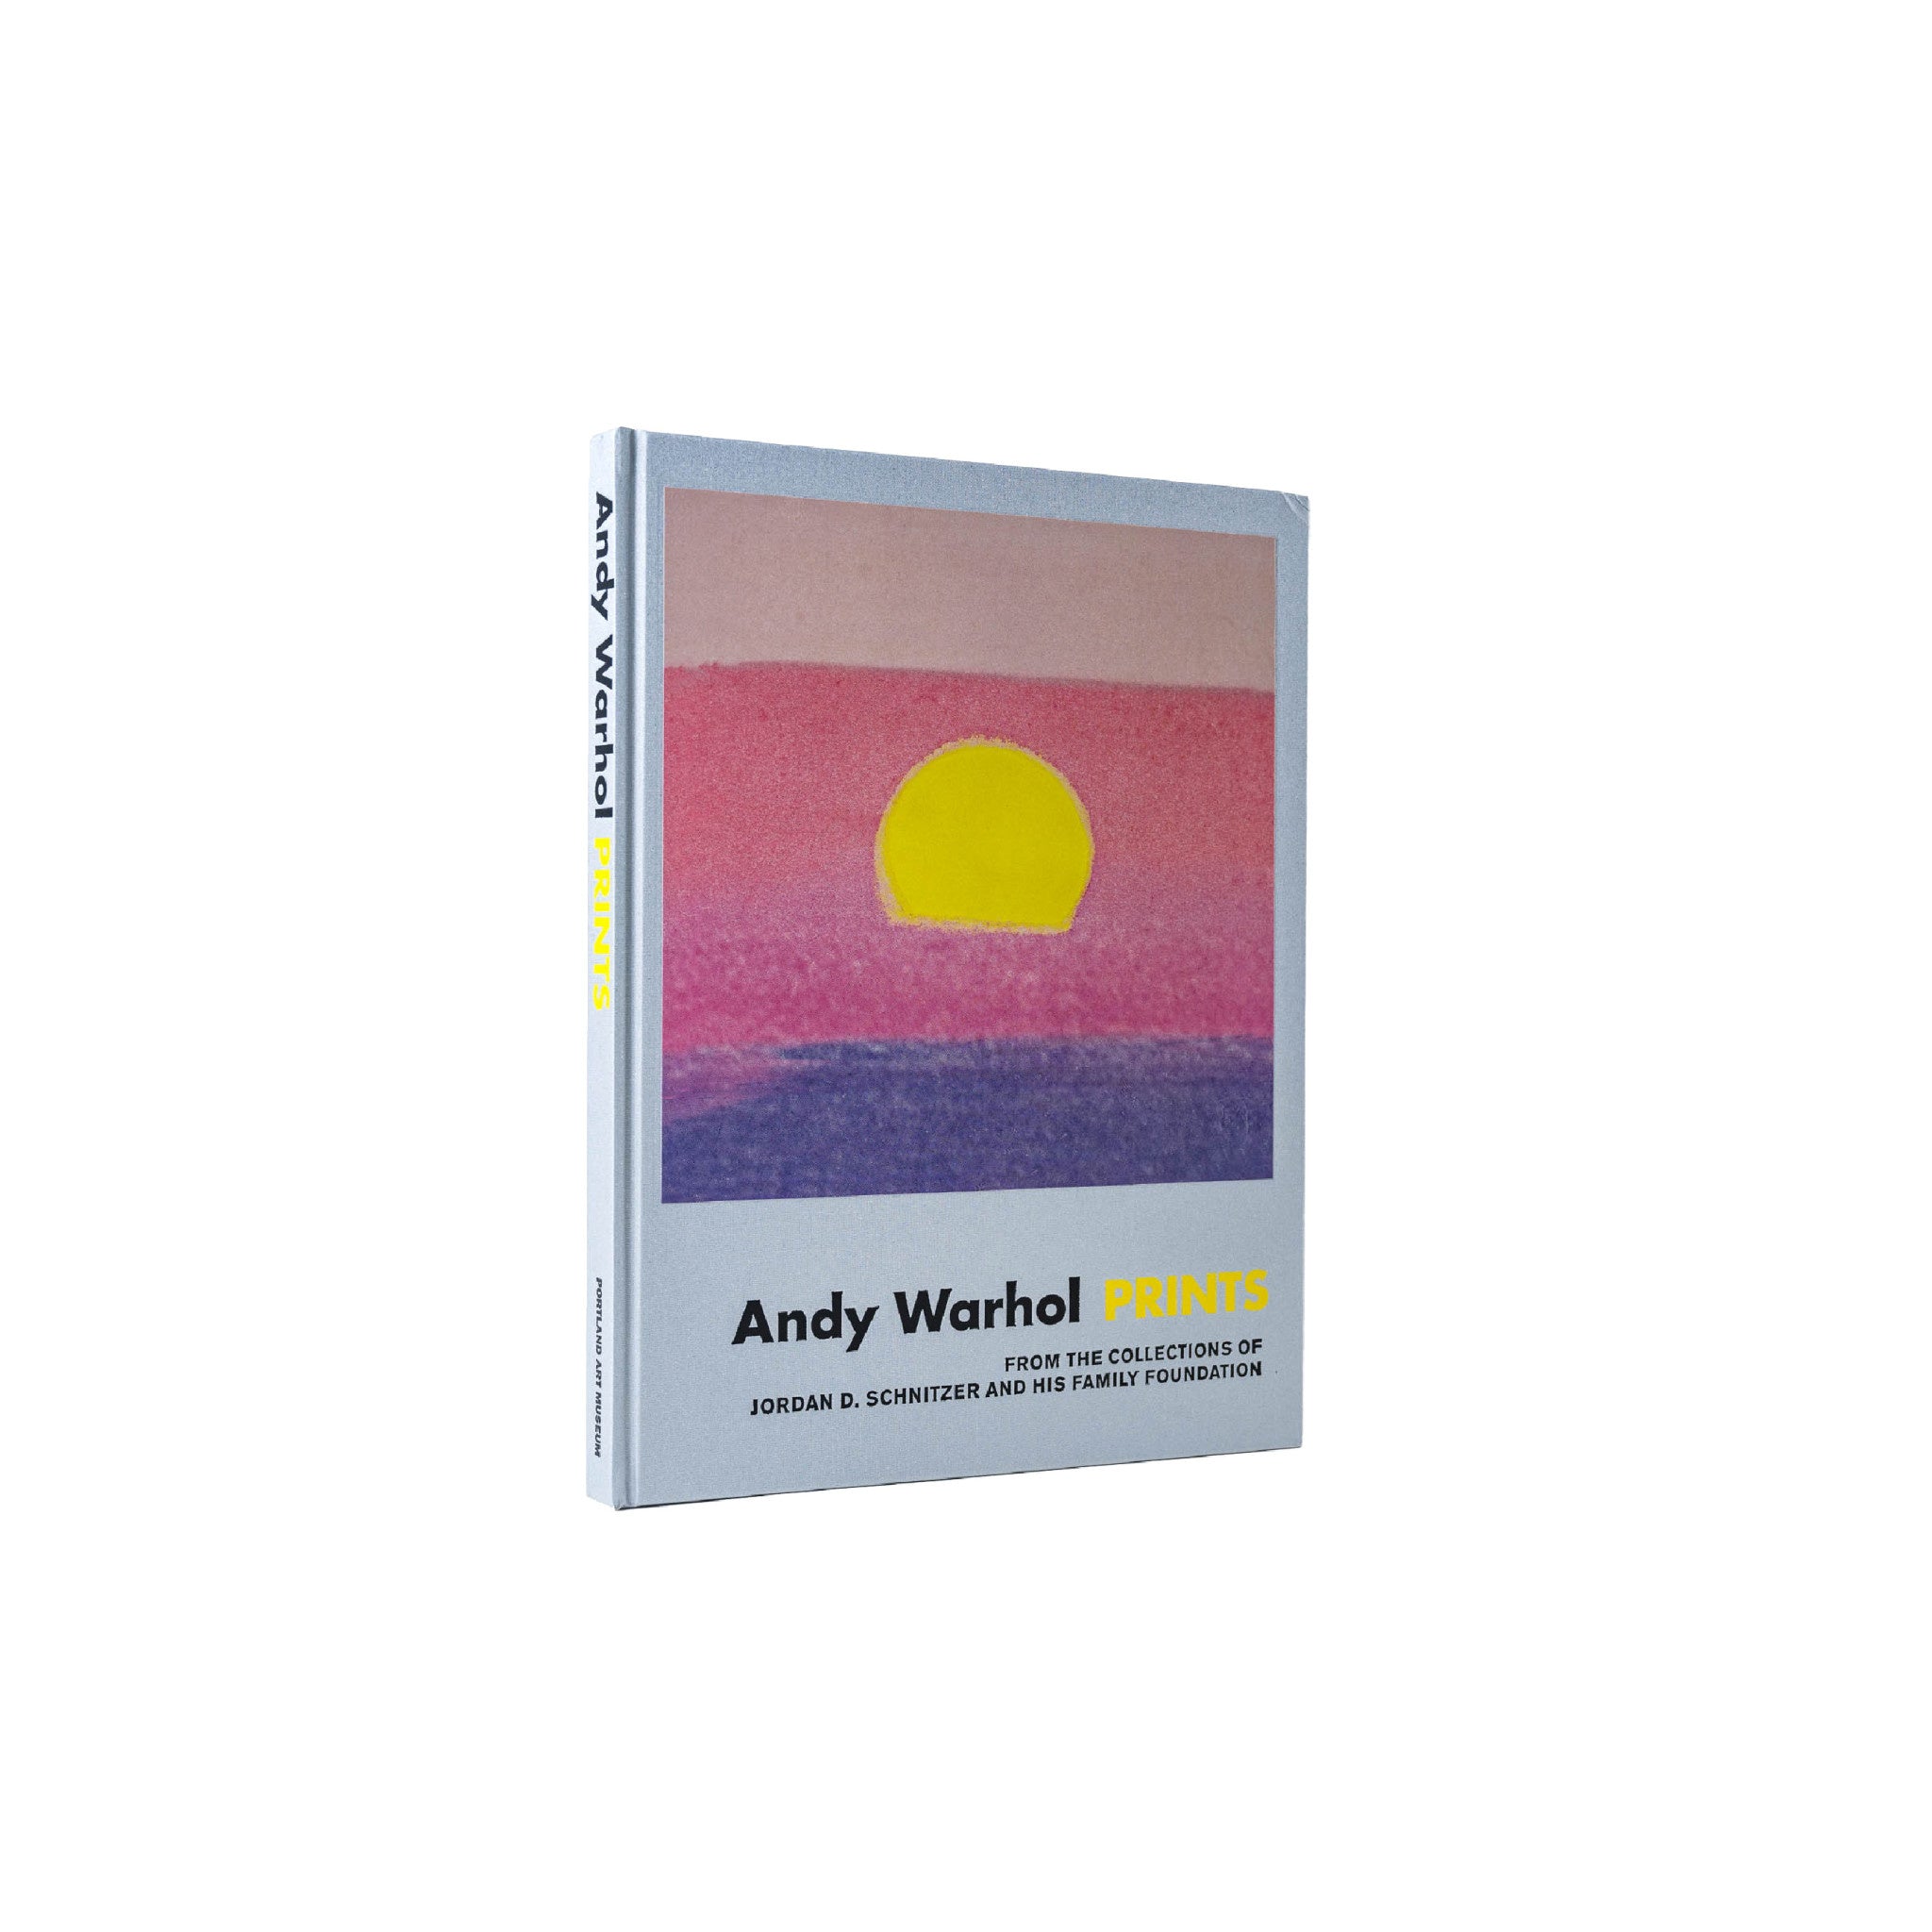 Andy Warhol: Prints - Wynwood Walls Shop